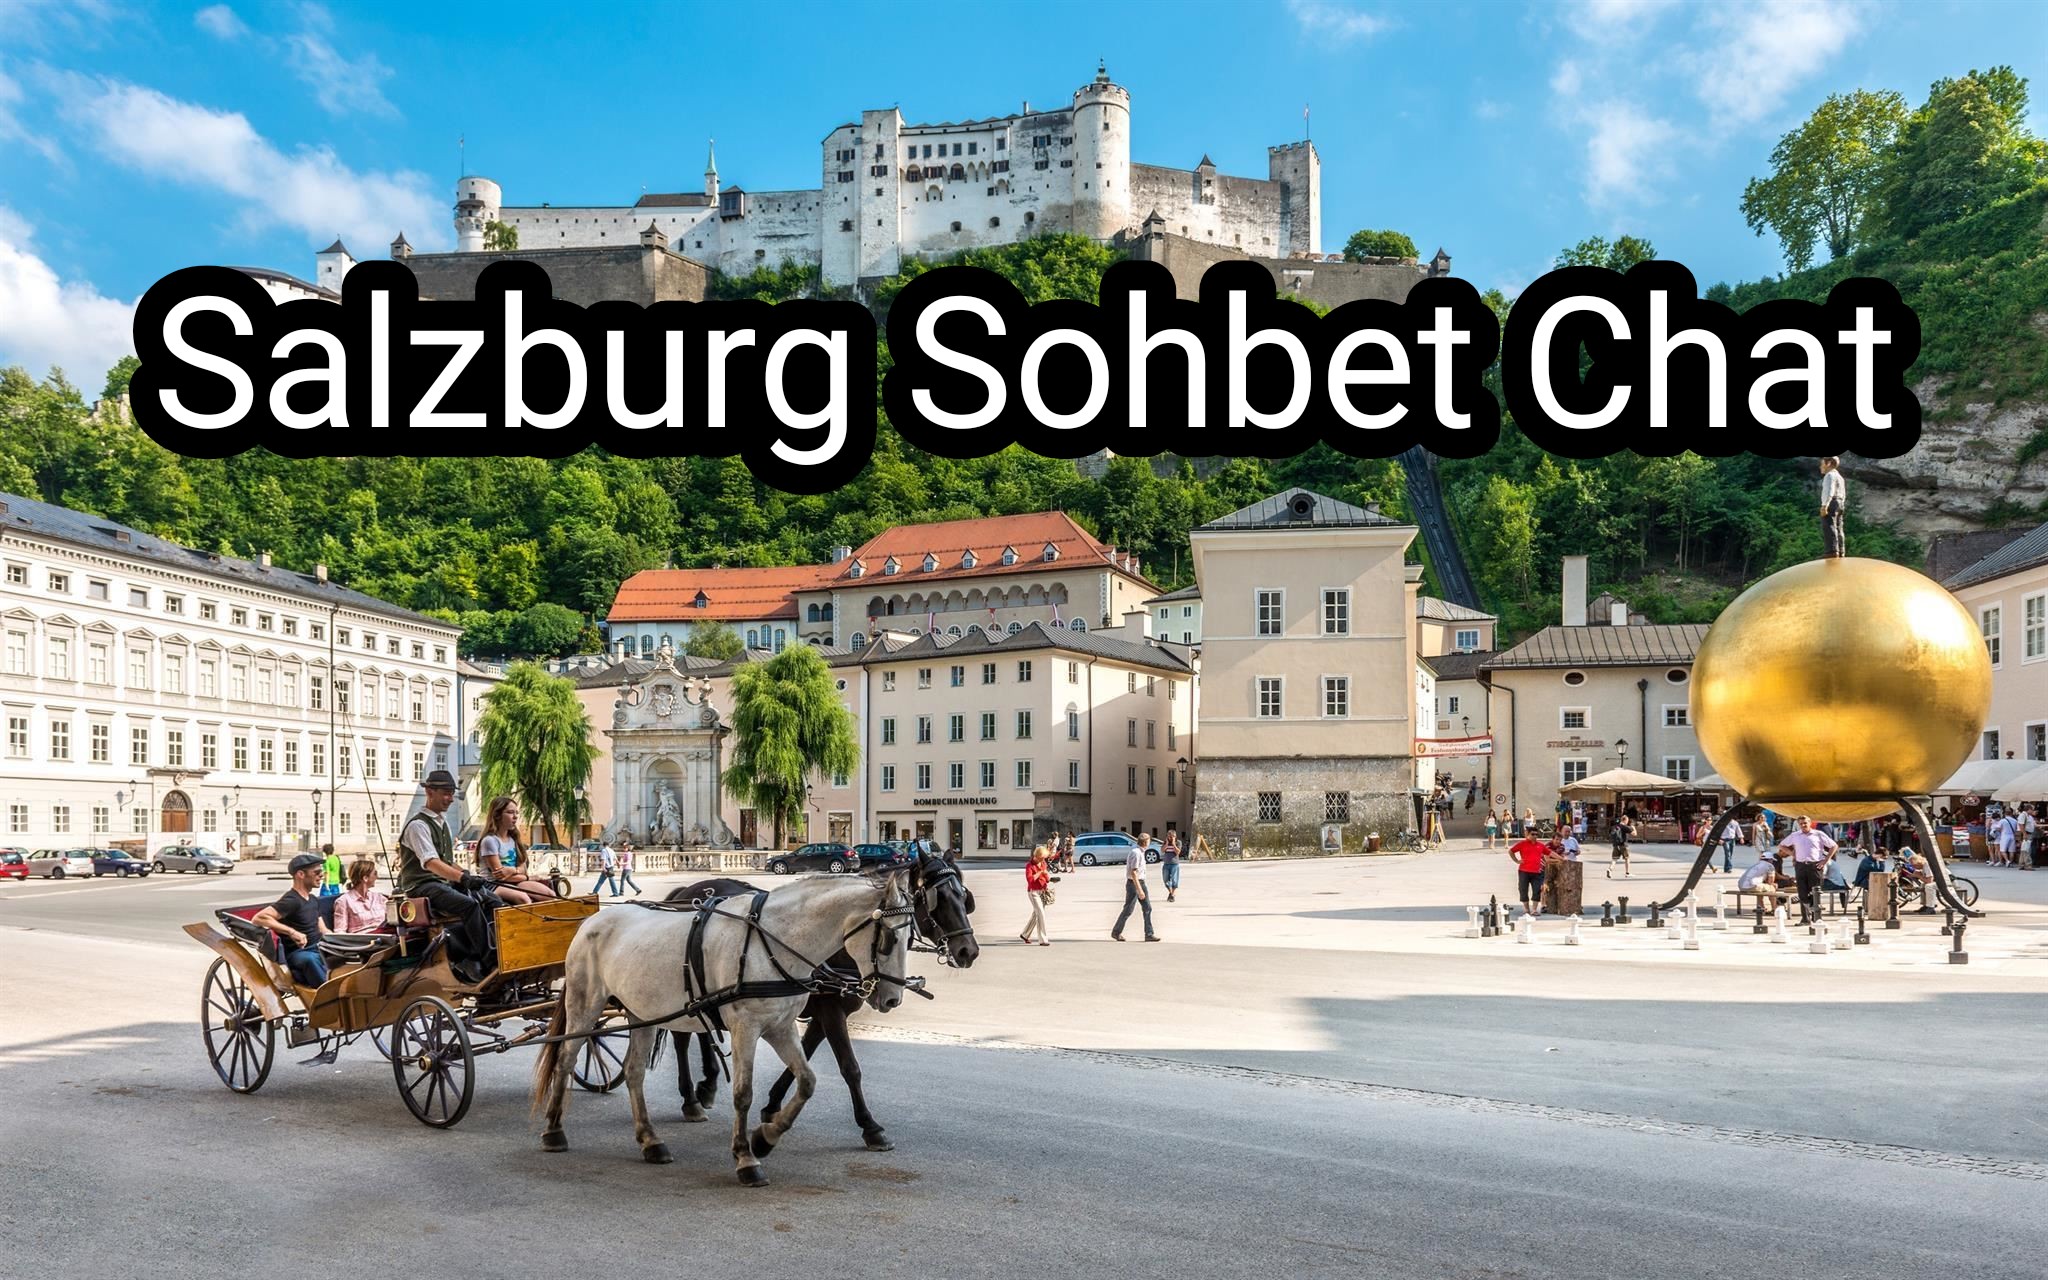 Salzburg Sohbet